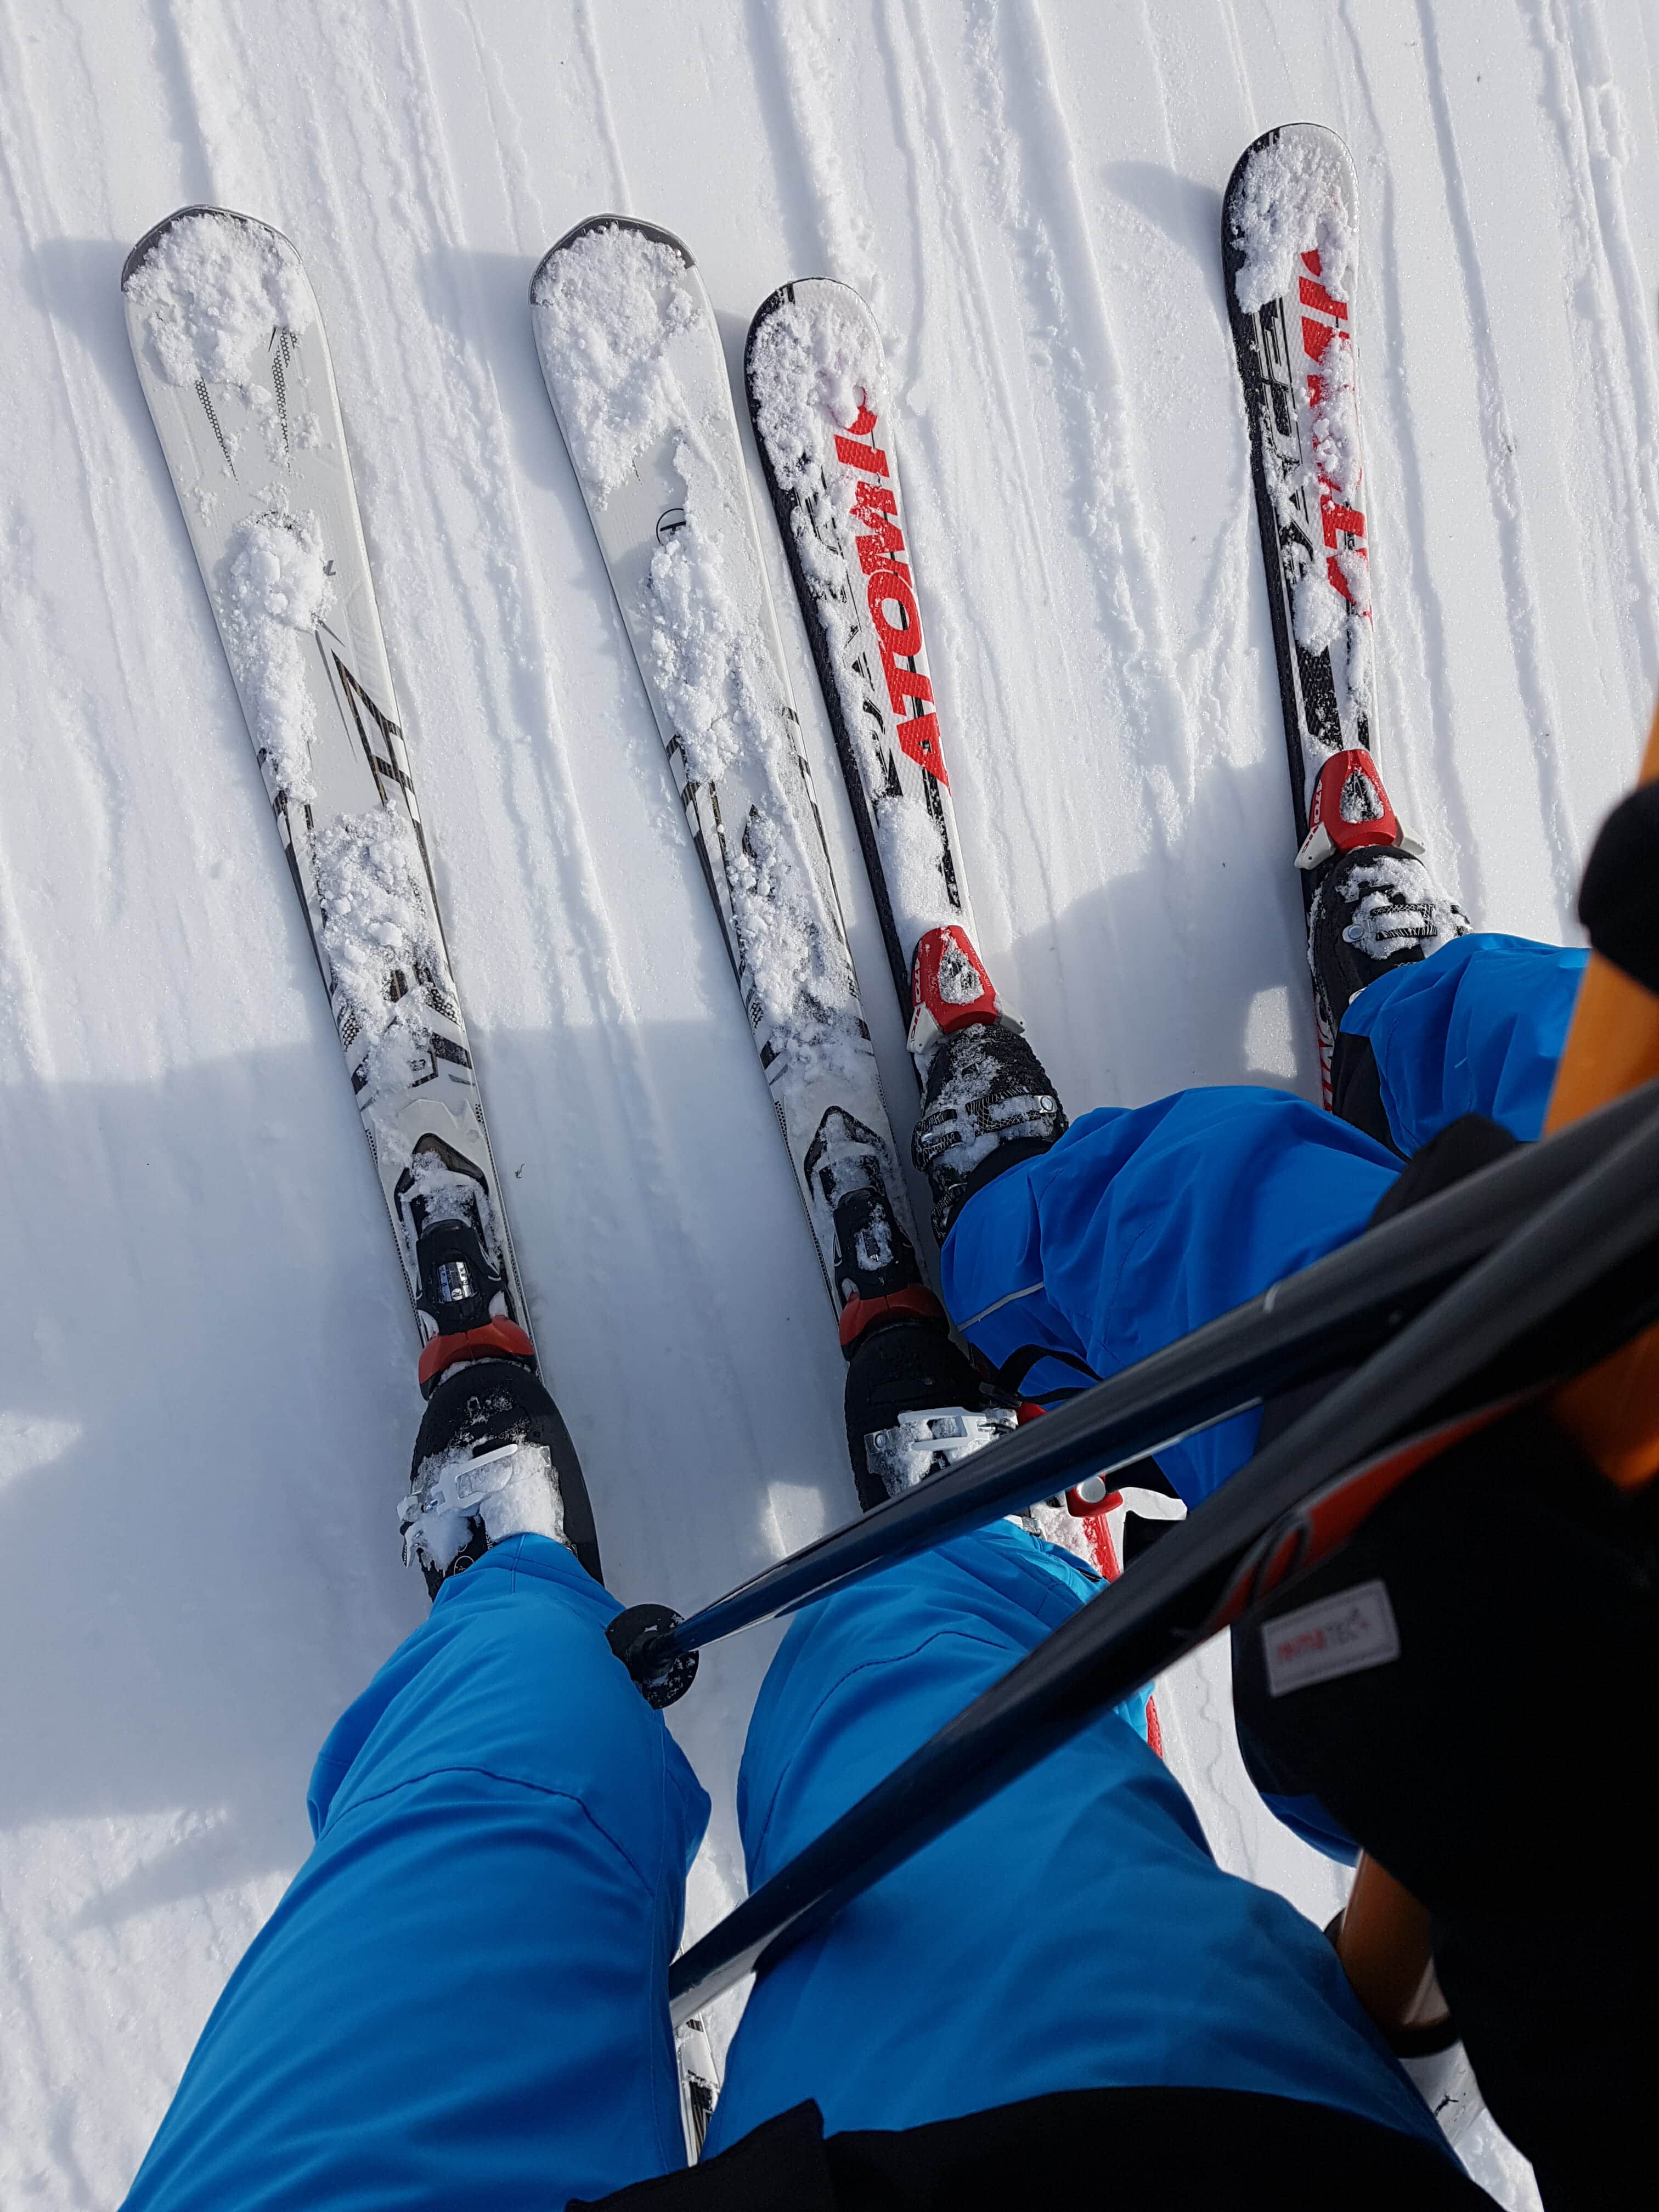 Skisokken tegen koude voeten tijdens de wintersport